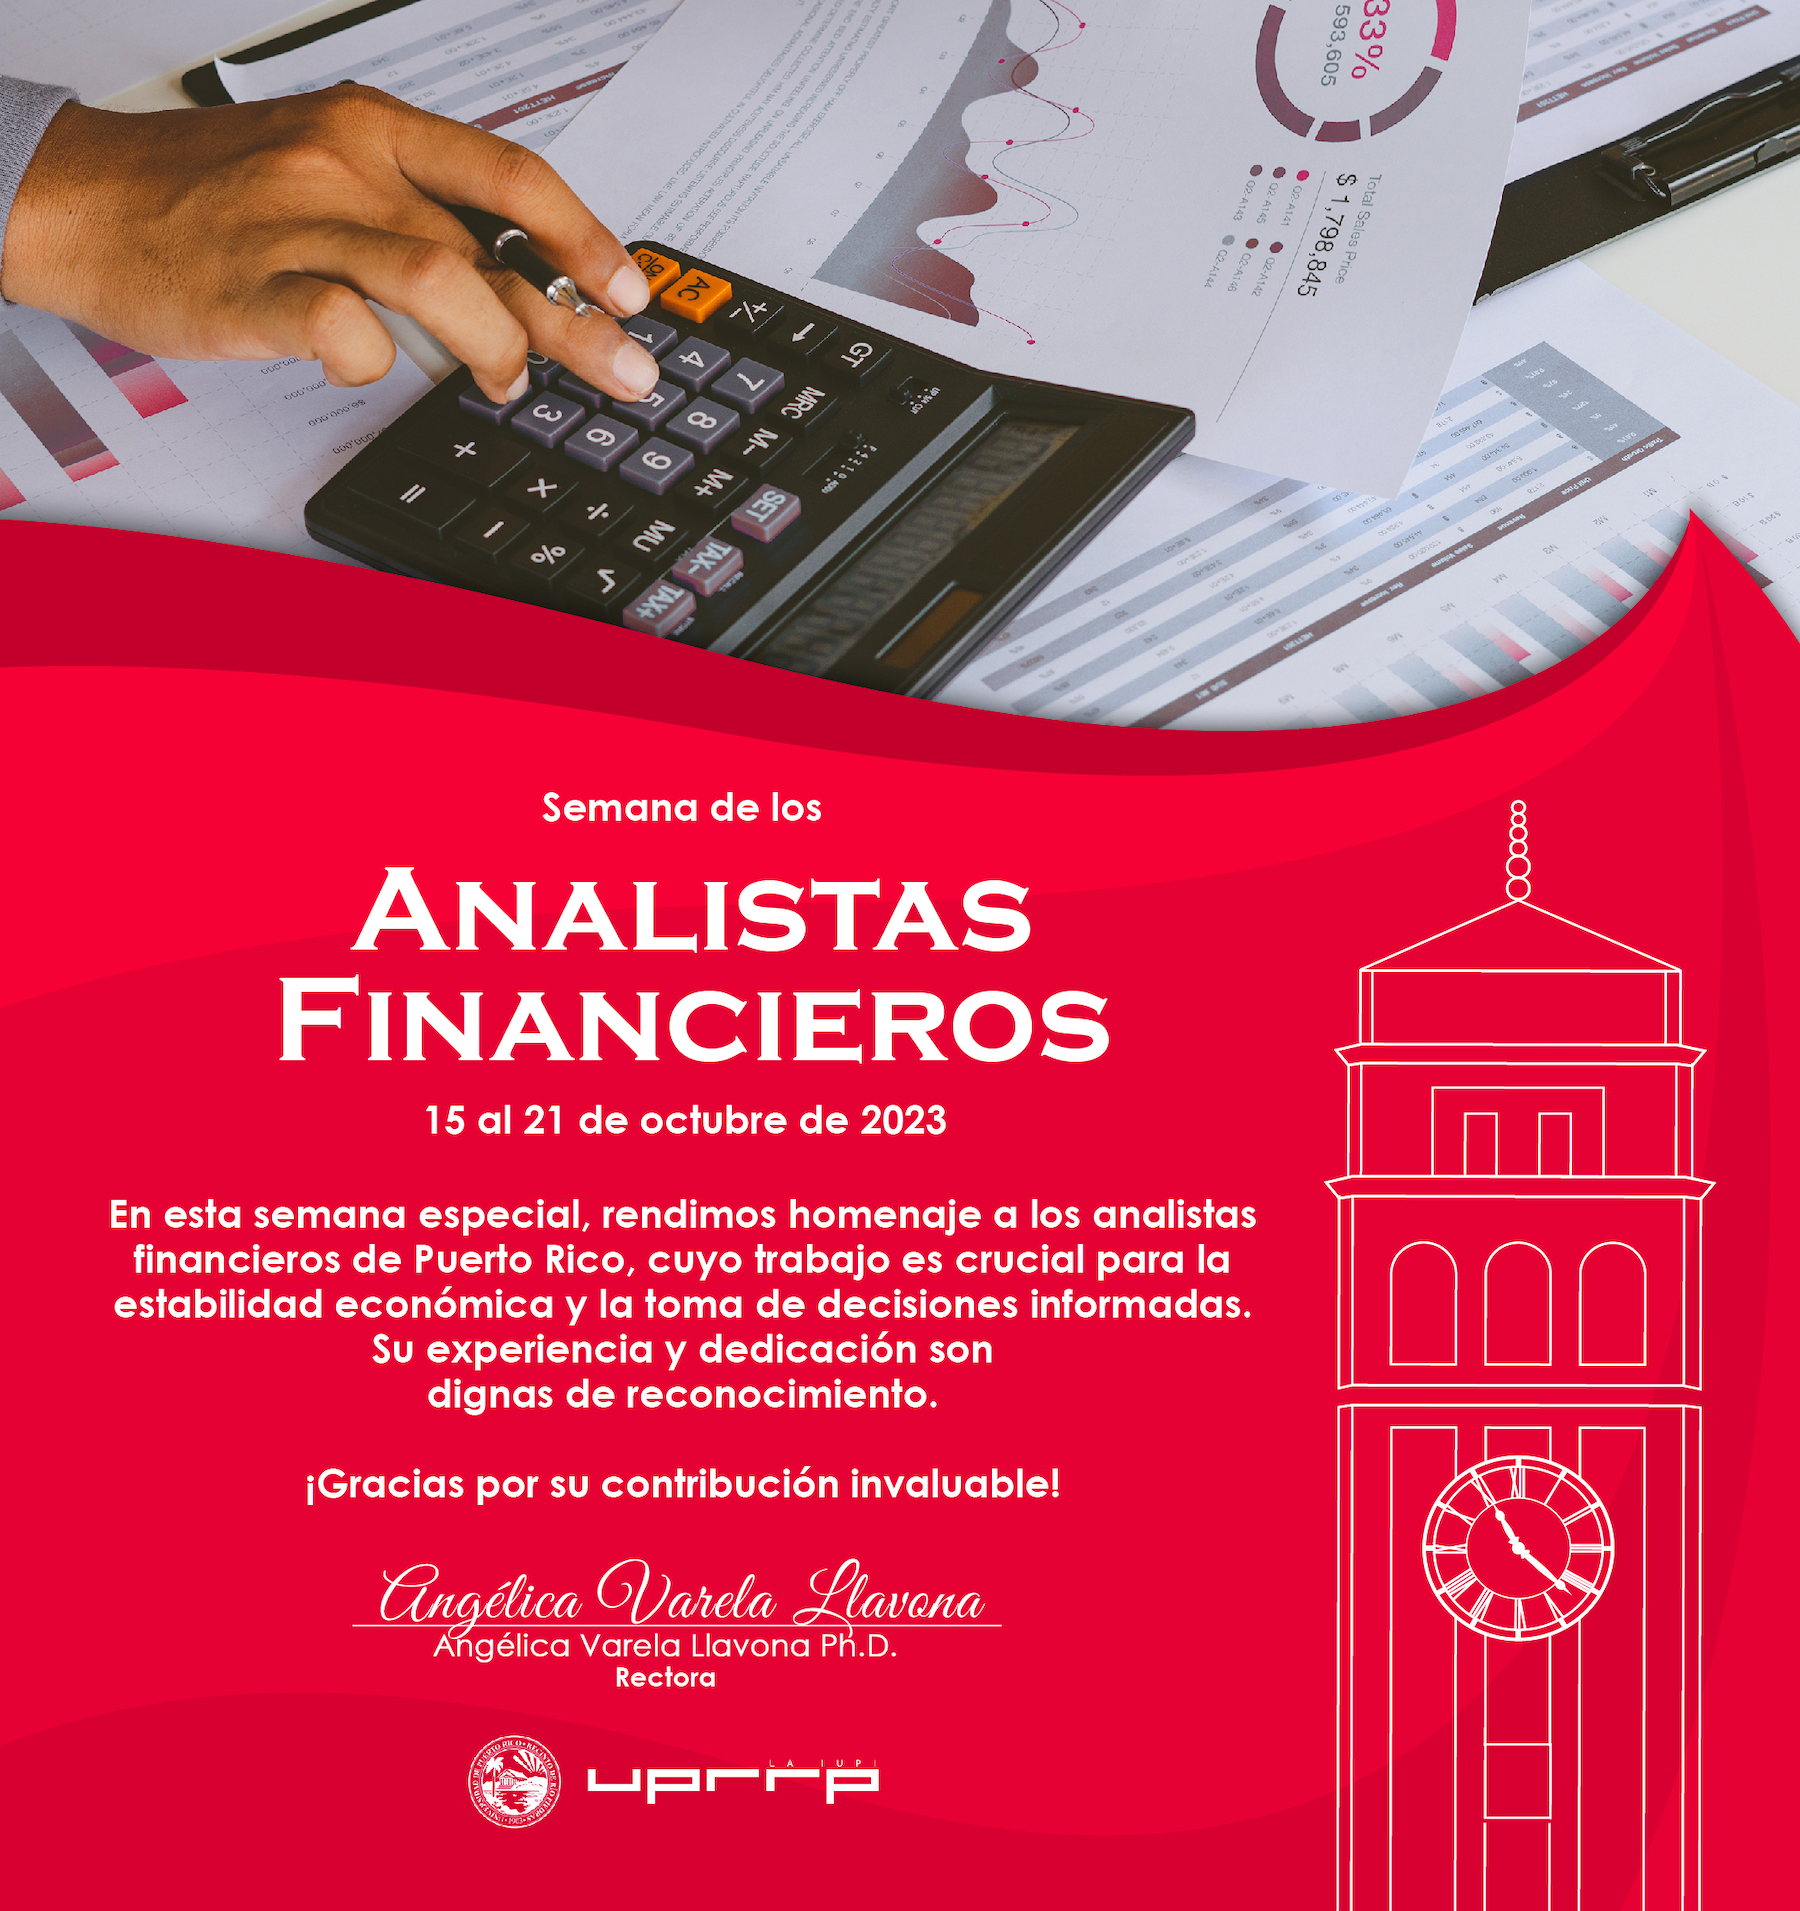 Felicitaciones en la Semana de los Analistas Financieros